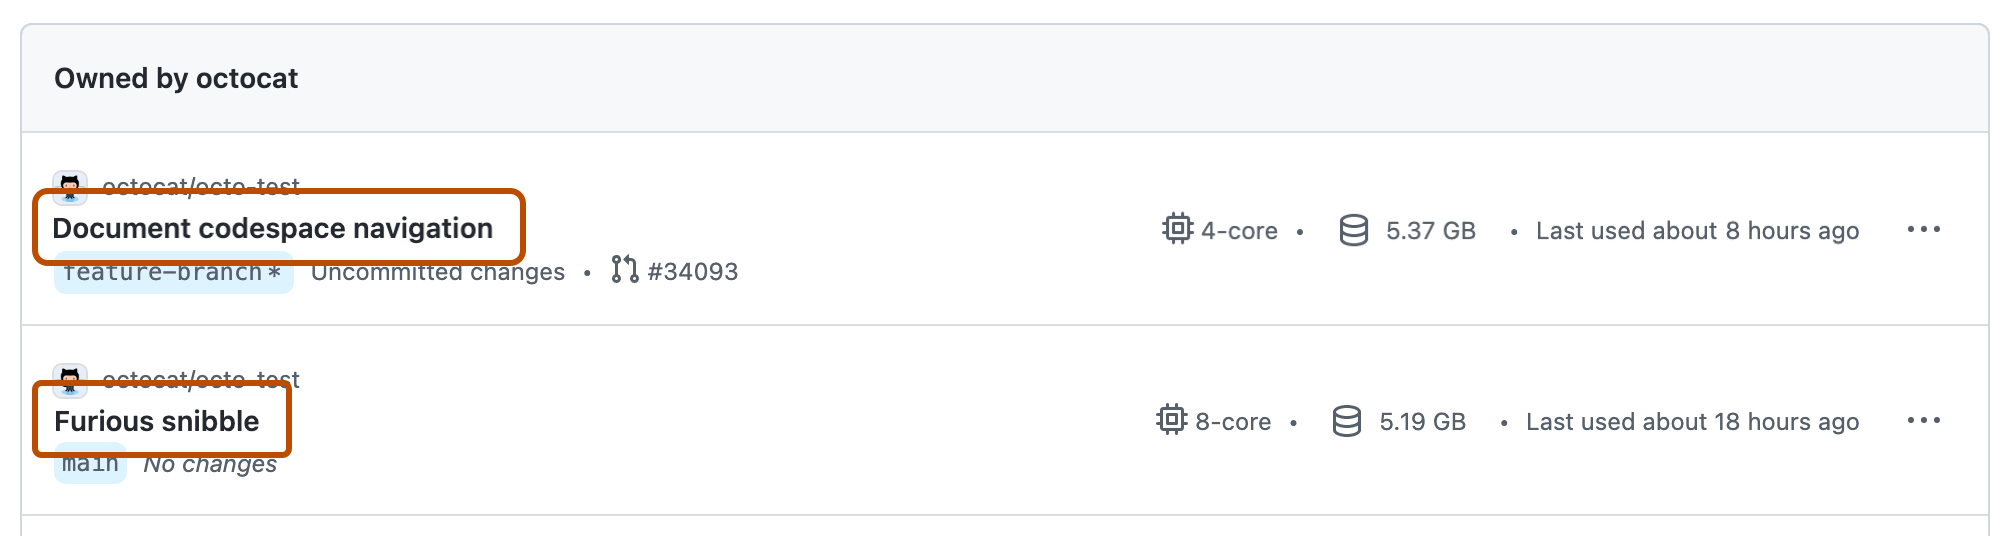 GitHub にある 2 つの codespace 一覧のスクリーンショット。 codespace の名前が濃いオレンジ色の枠線で強調表示されています。